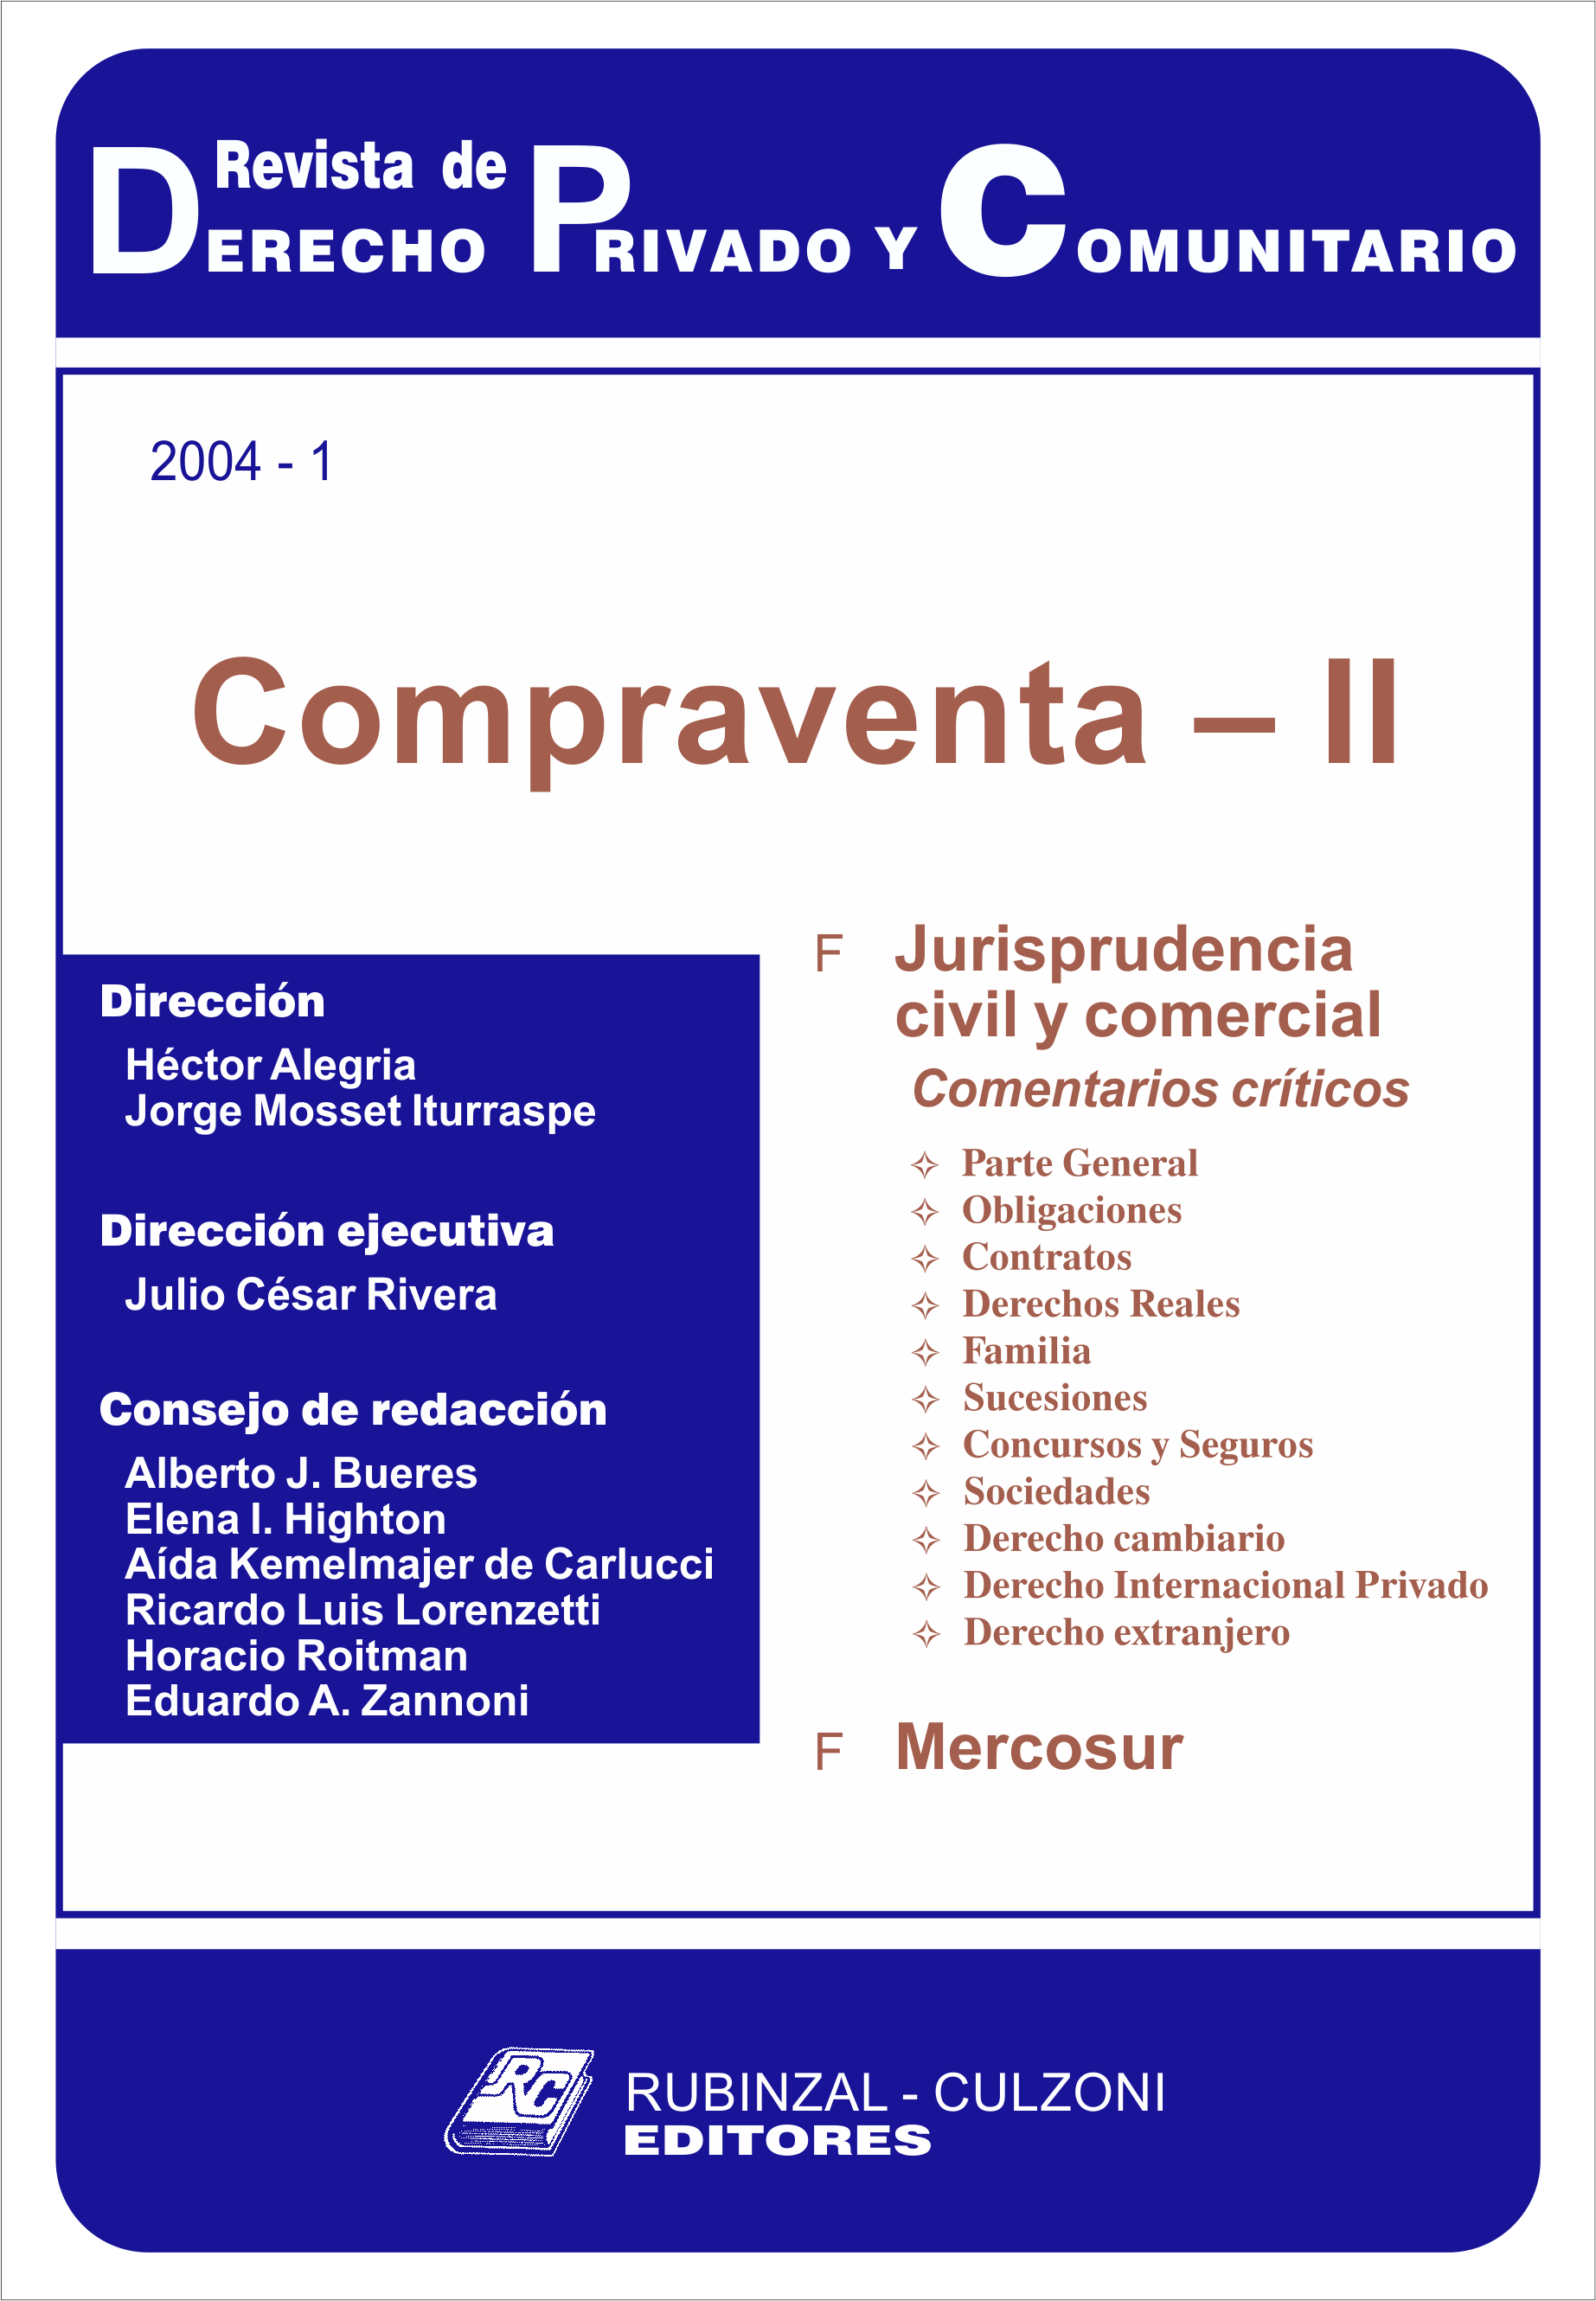 Revista de Derecho Privado y Comunitario - Compraventa - II.